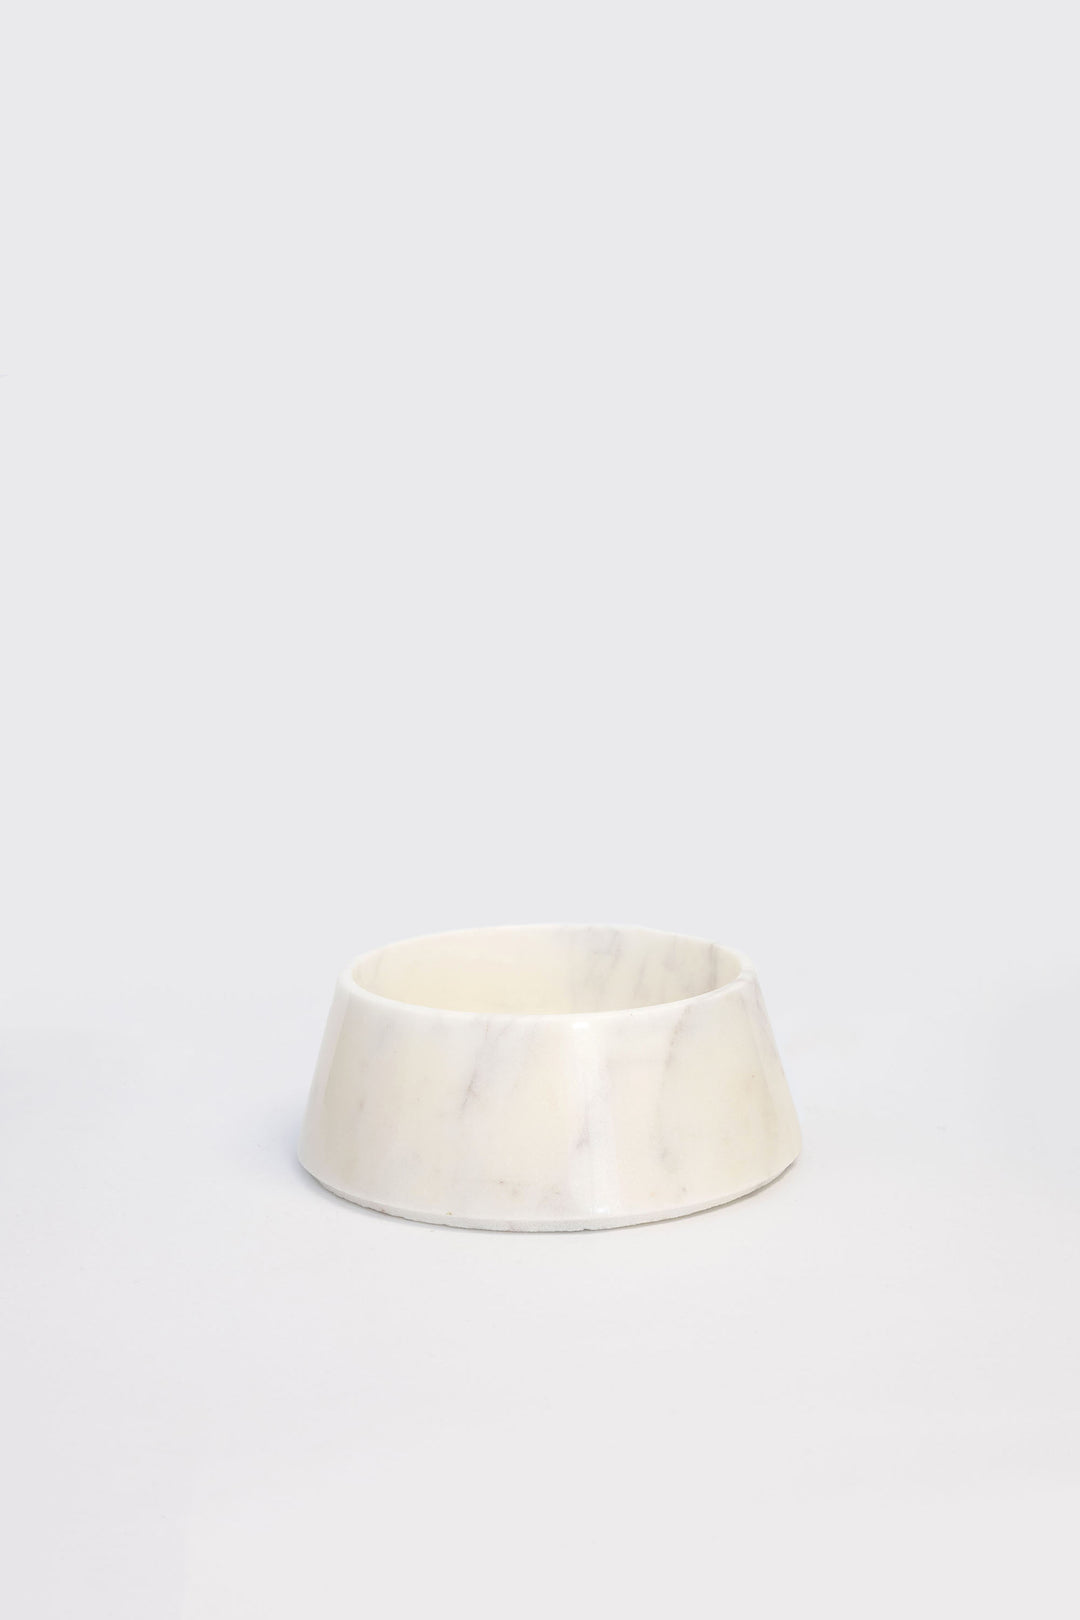 Pet Bowl / Marble White Stone